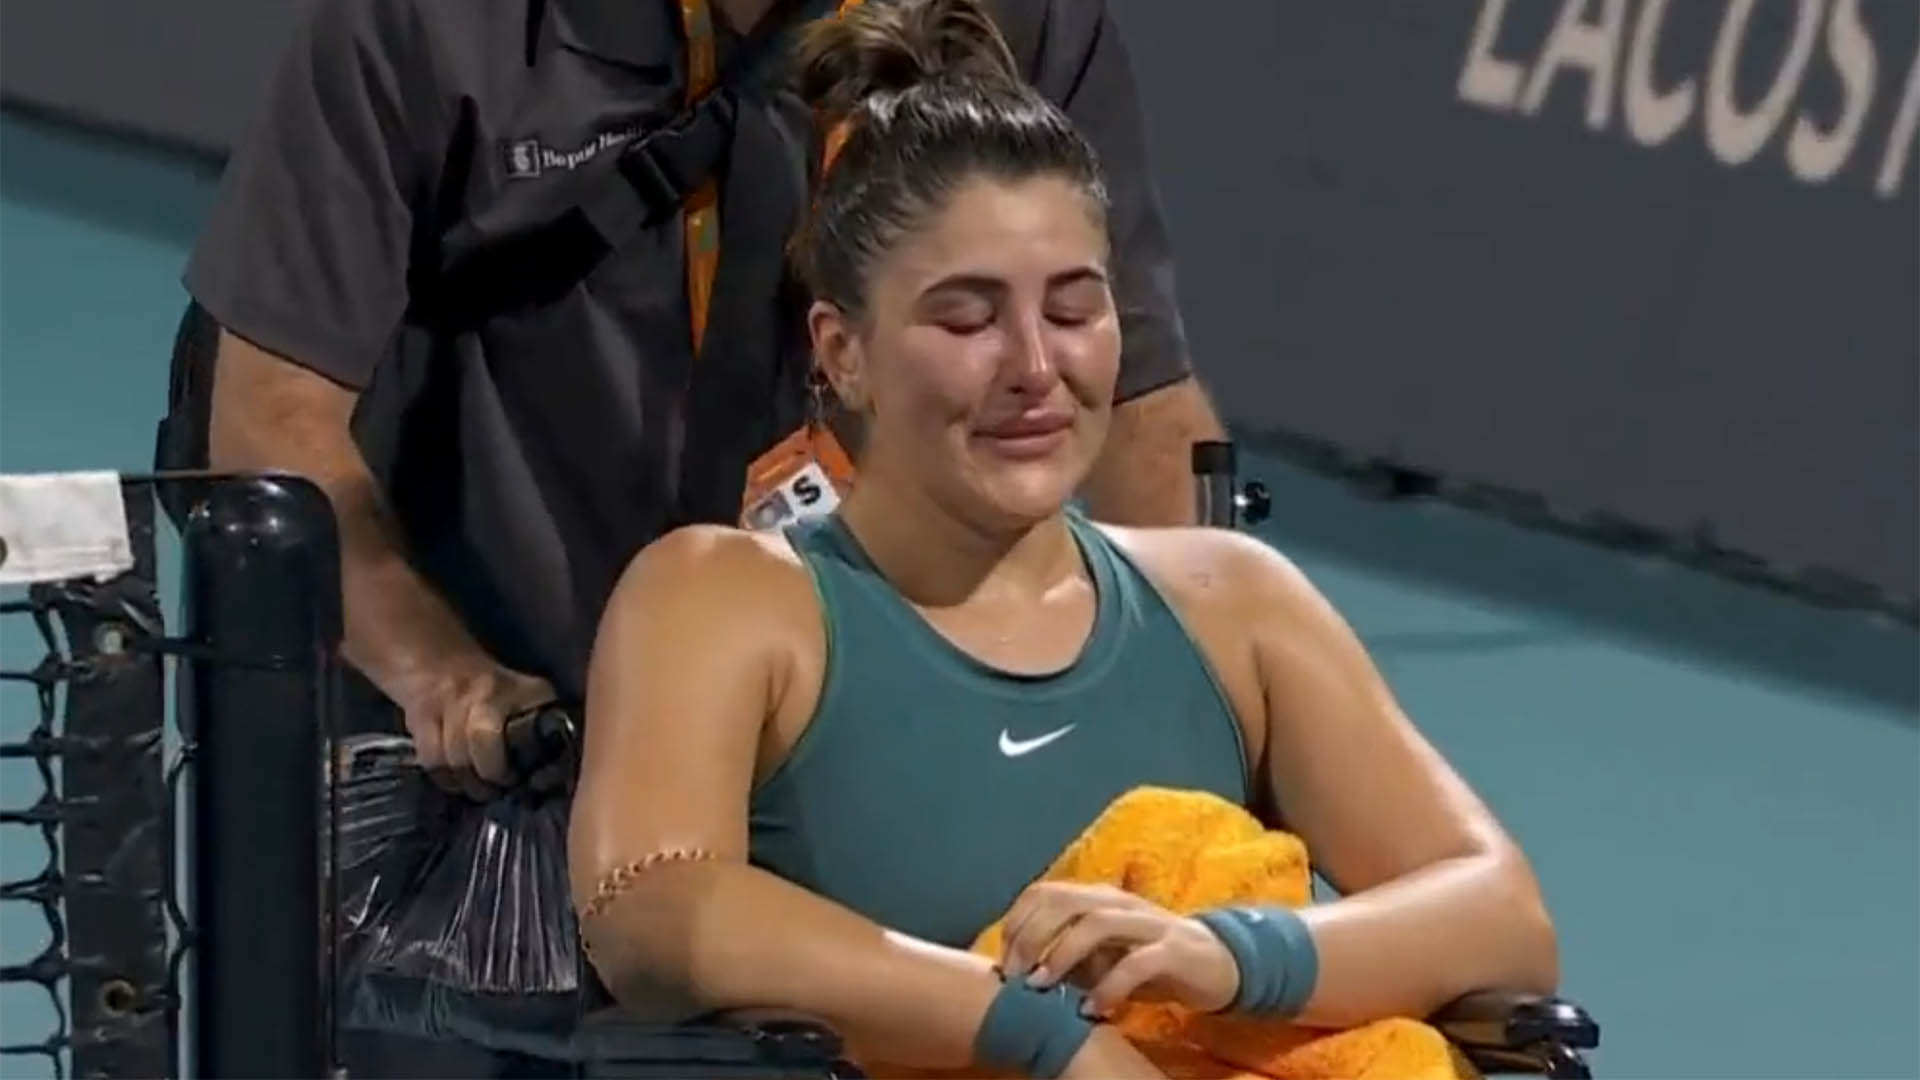 “¡Nunca sentí este dolor!”: Bianca Andreescu sufrió una dura lesión y se retiró en silla de ruedas tras sus gritos desconsolados